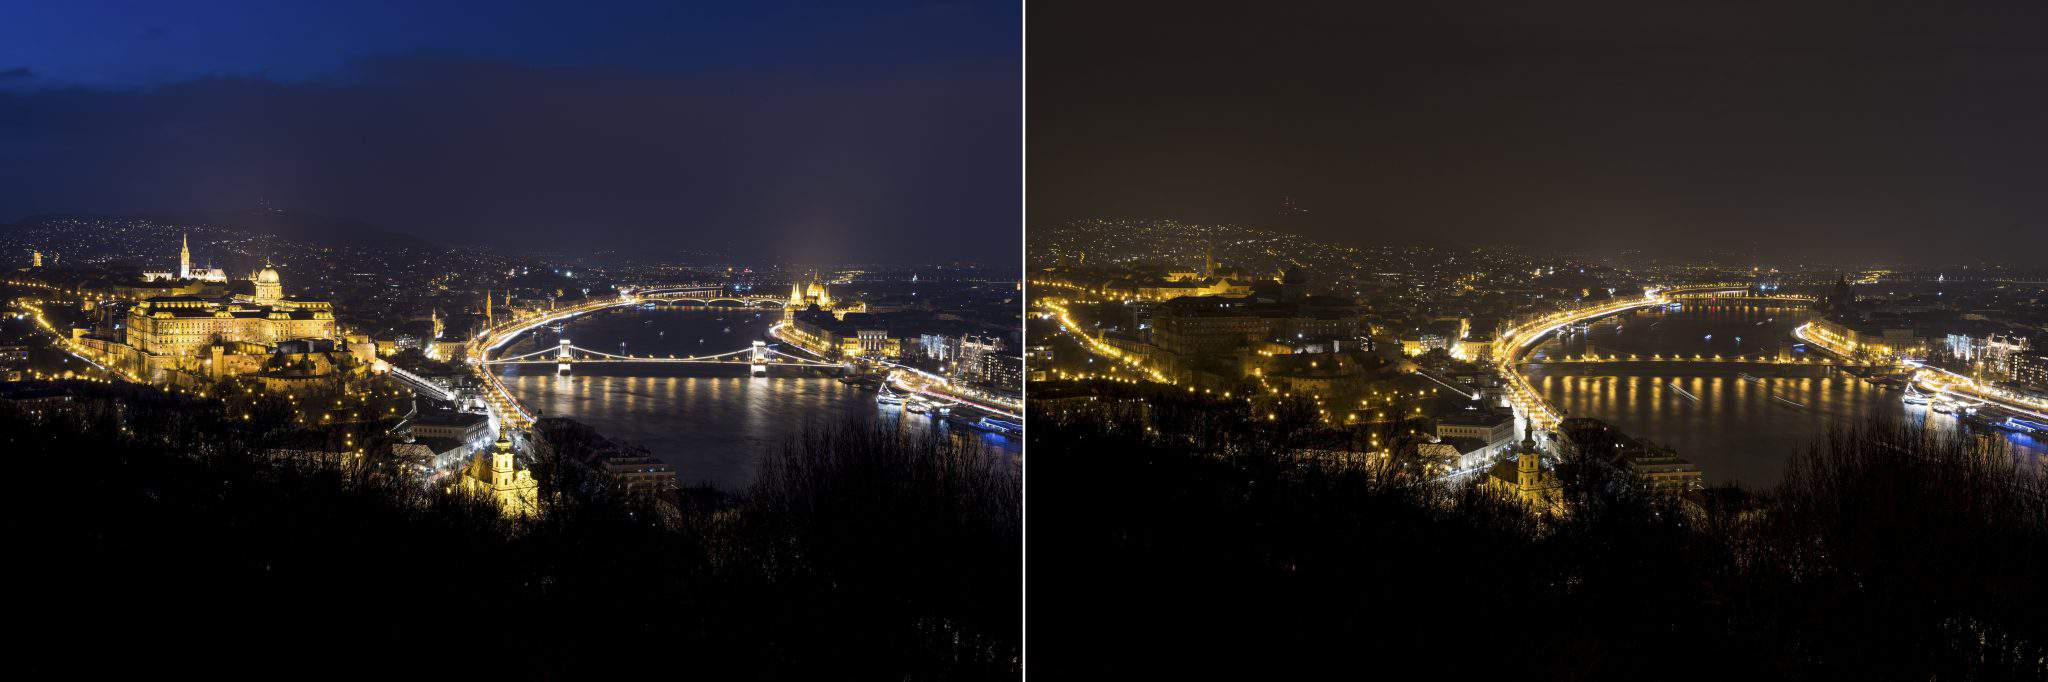 Stunde der Erde in Budapest